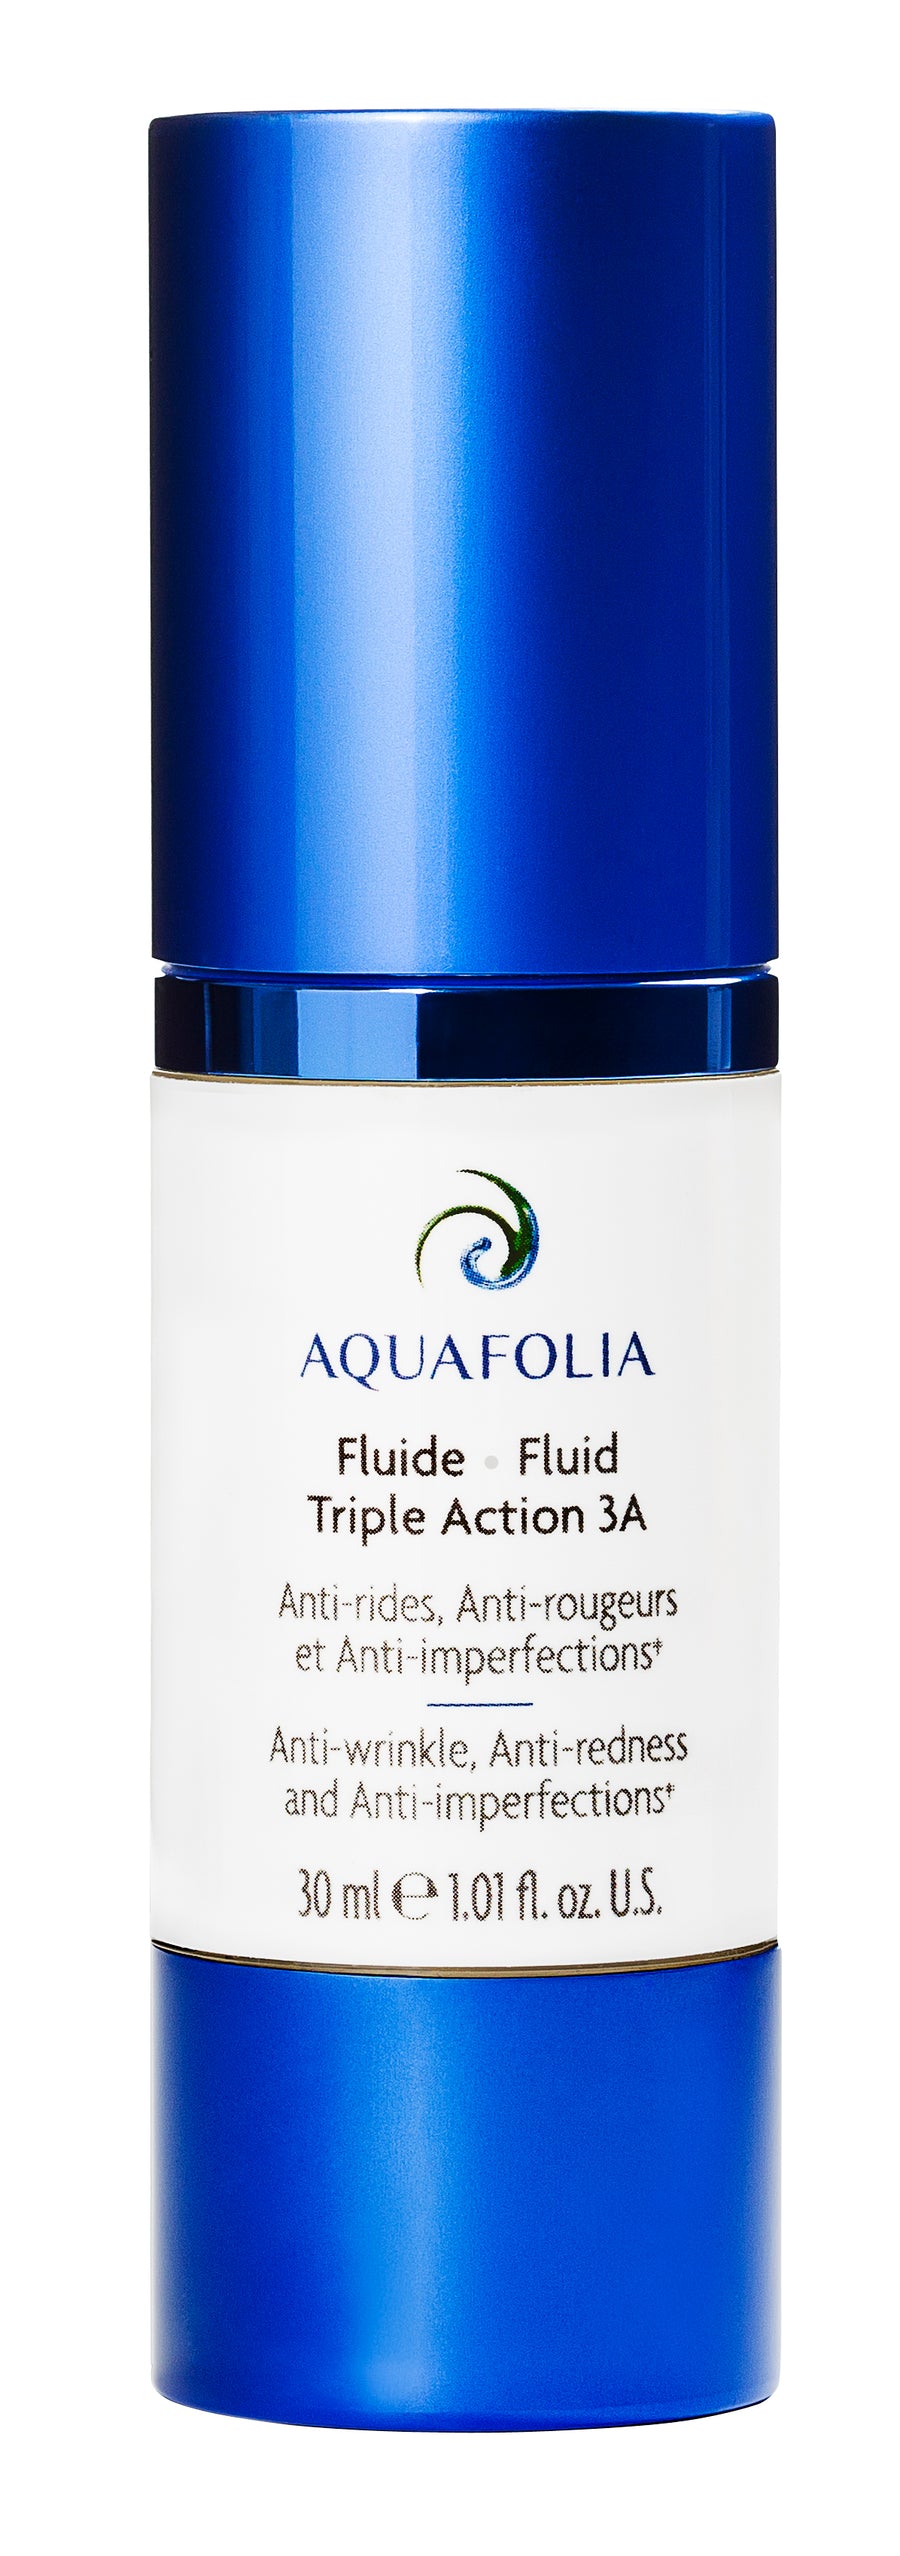 Aquafolia- Fluide Triple Action 3A- Concept Triple Action 3A